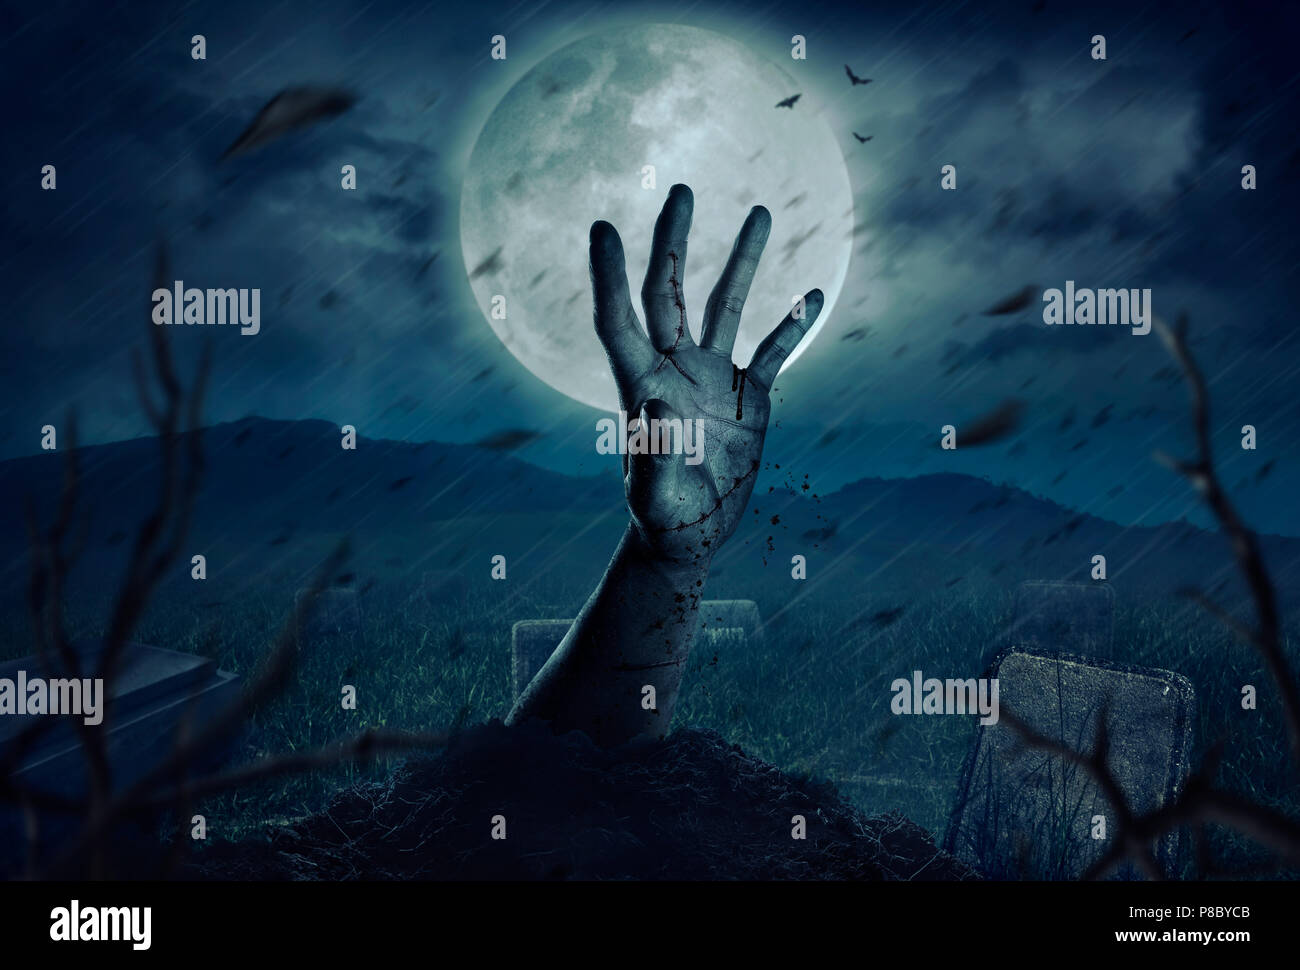 Zombie hands rising in dark Halloween night. Stock Photo